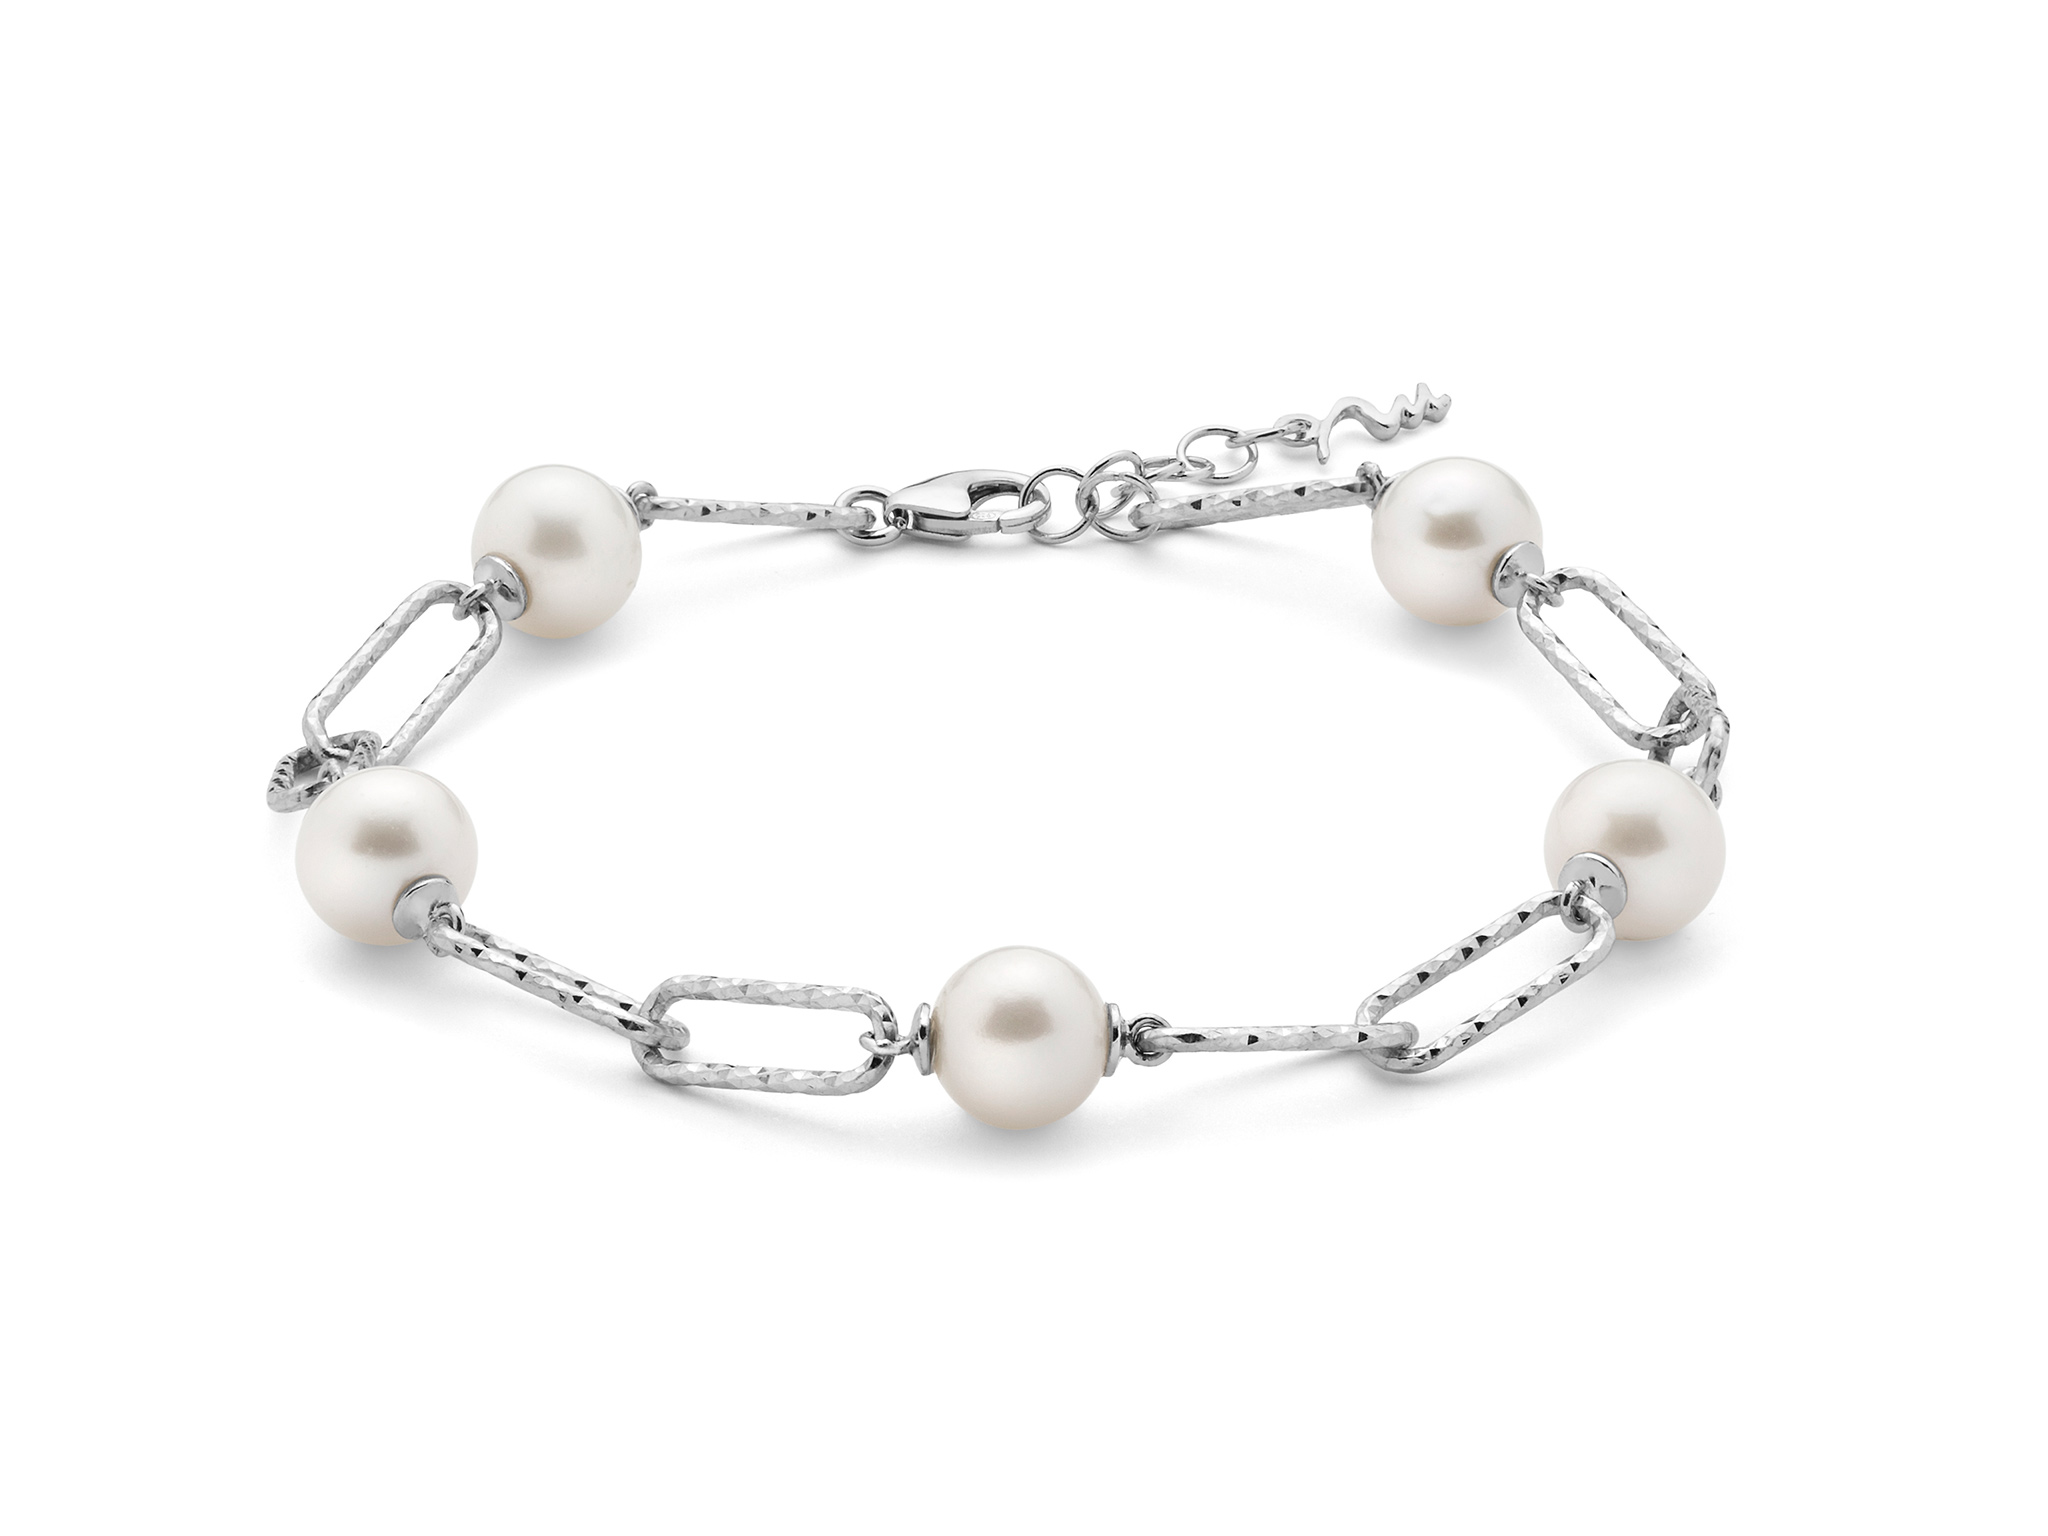 Bracciale con catena a maglia media, in argento con perle. - PBR3201